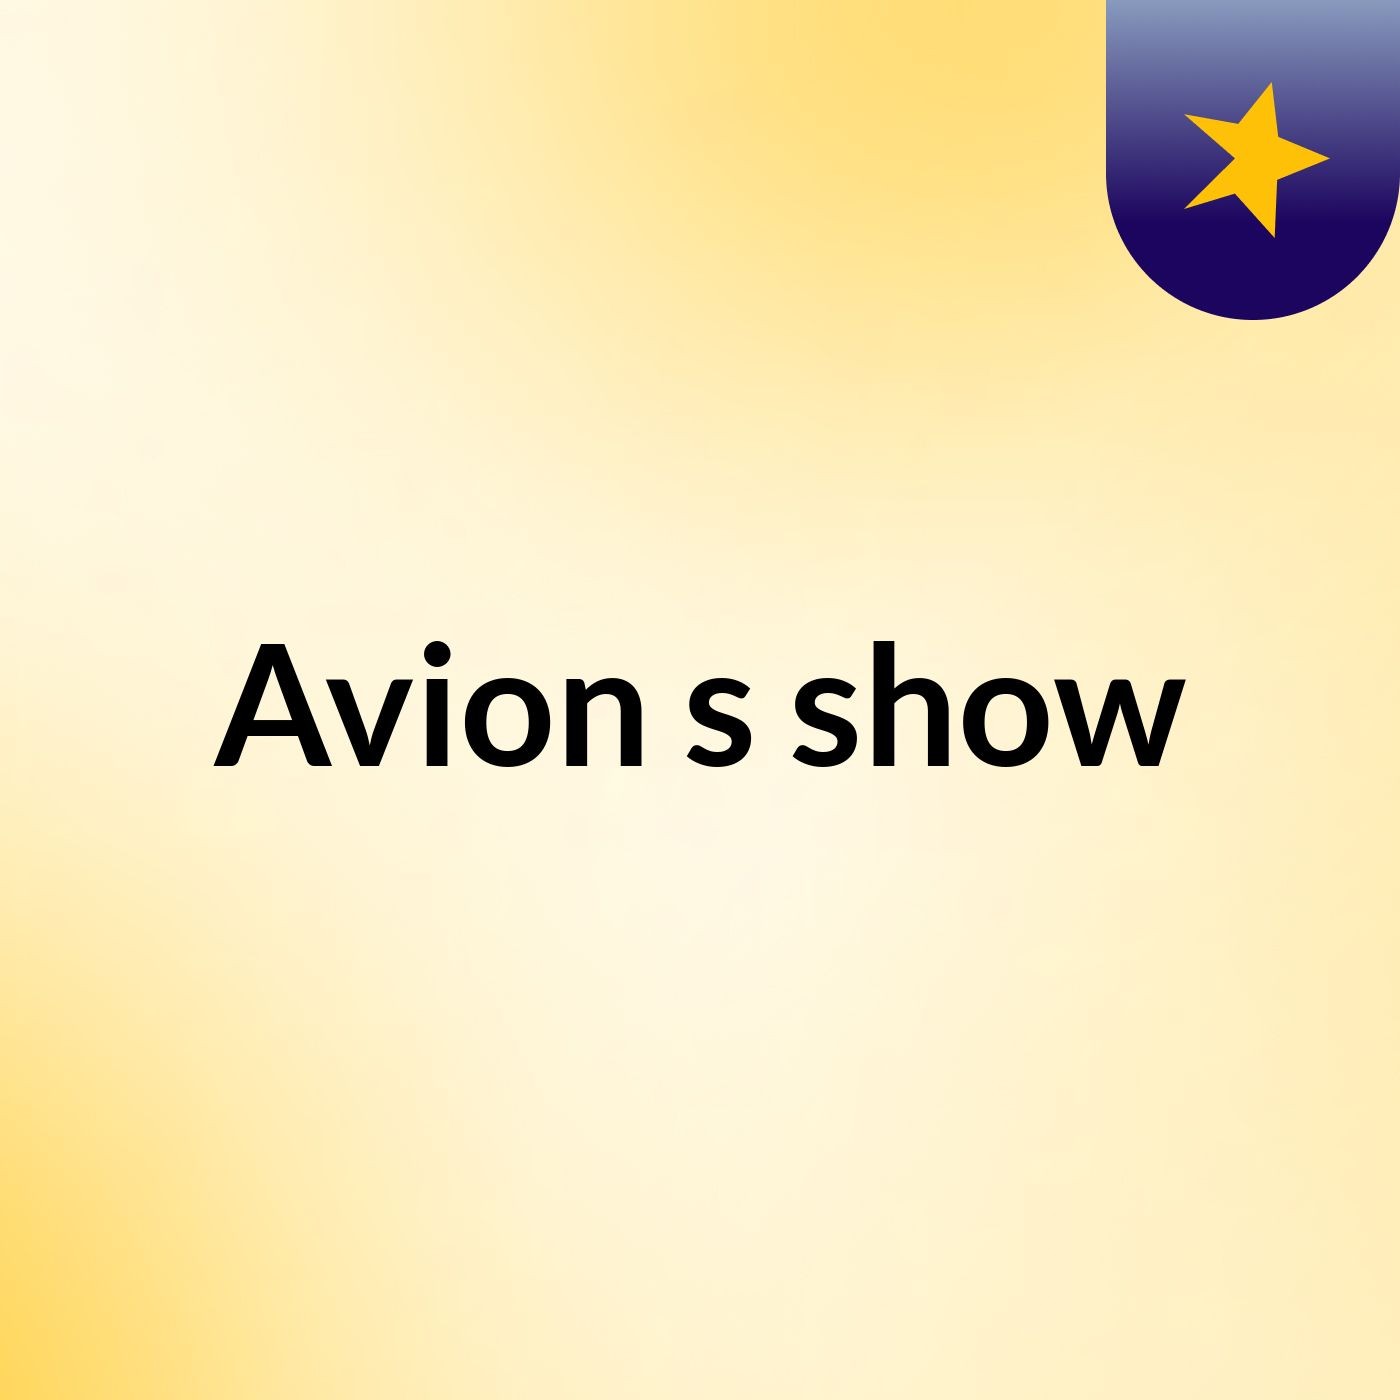 Avion's show